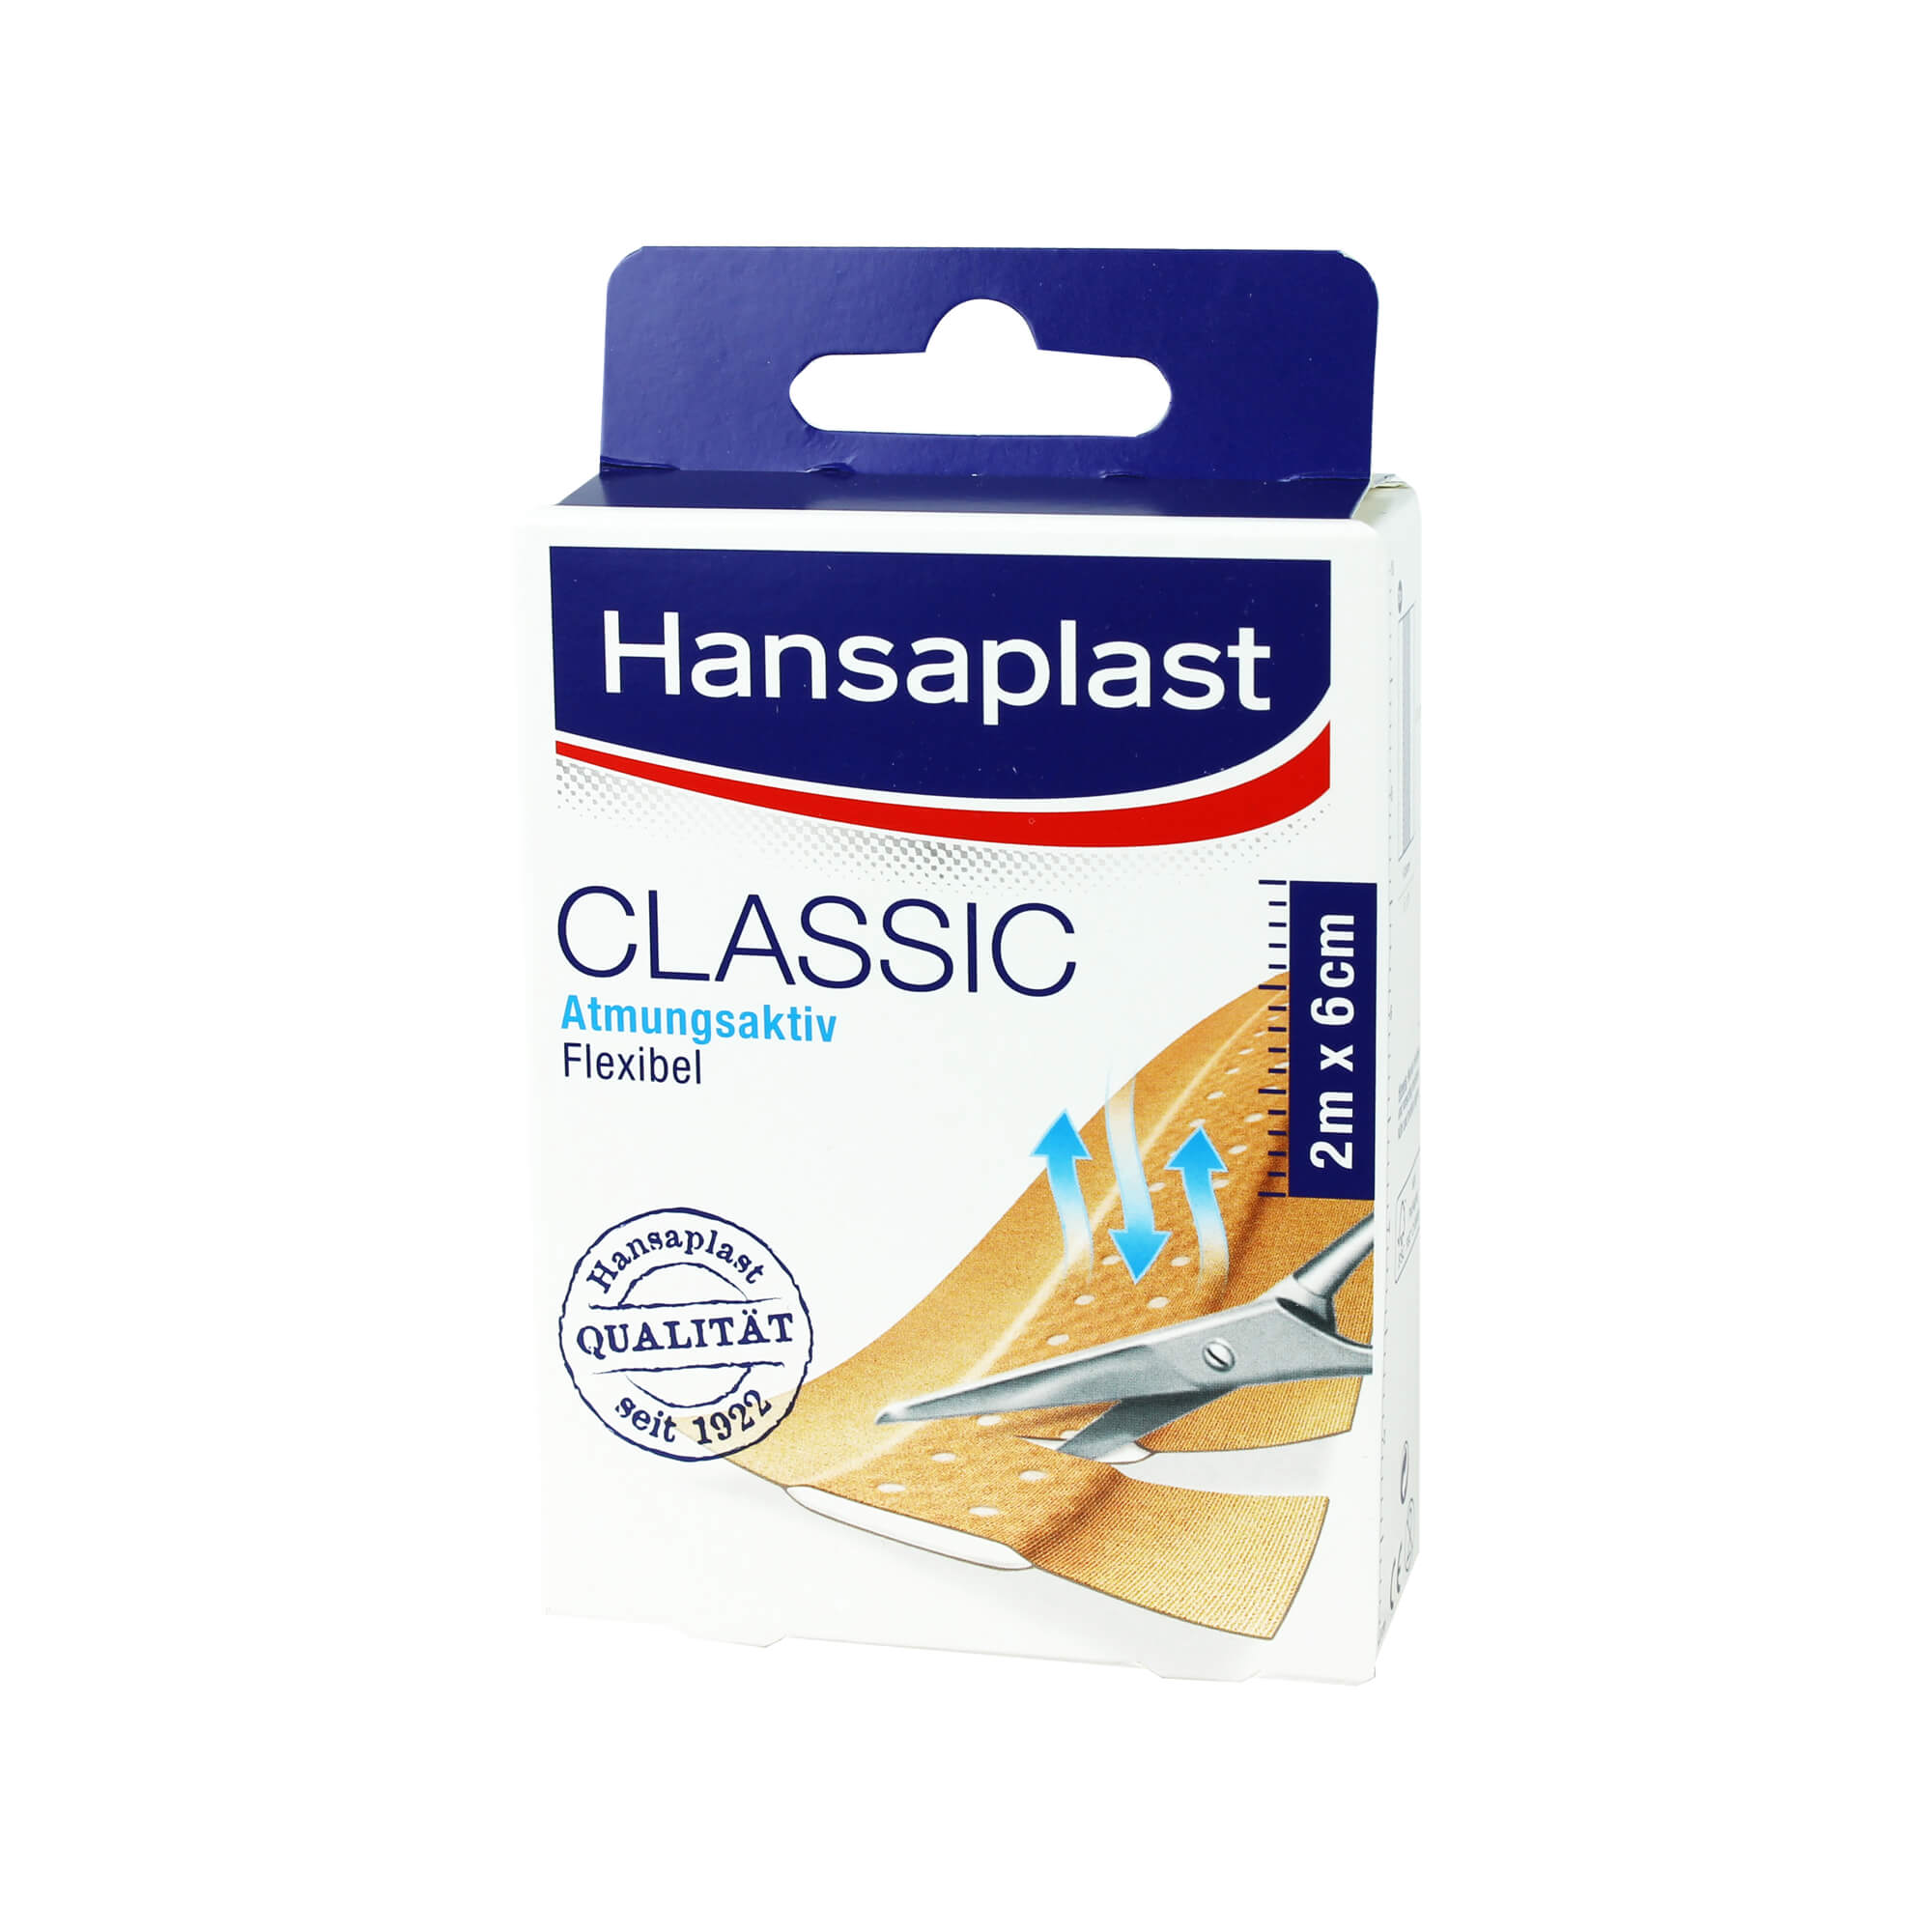 Das Original Hansaplast Pflaster für alle Arten von kleinen Verletzungen.